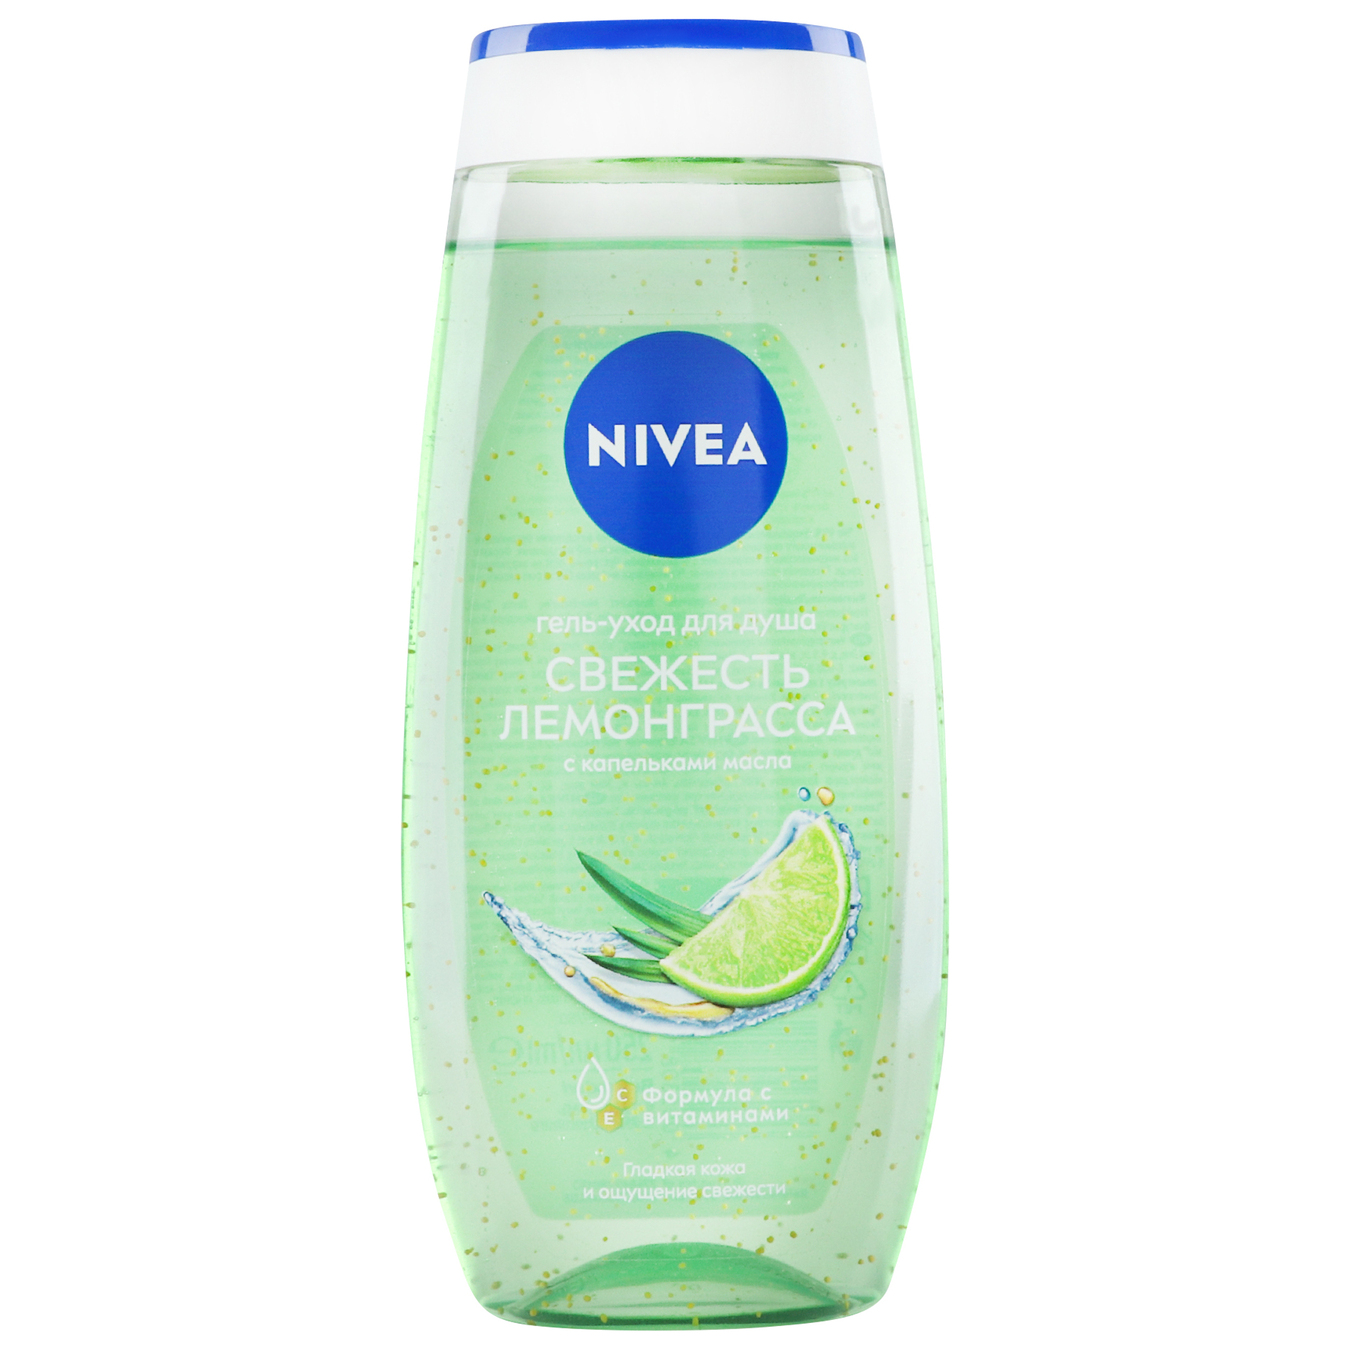 Nivea Lemongrass and Oil Shower Gel 250ml